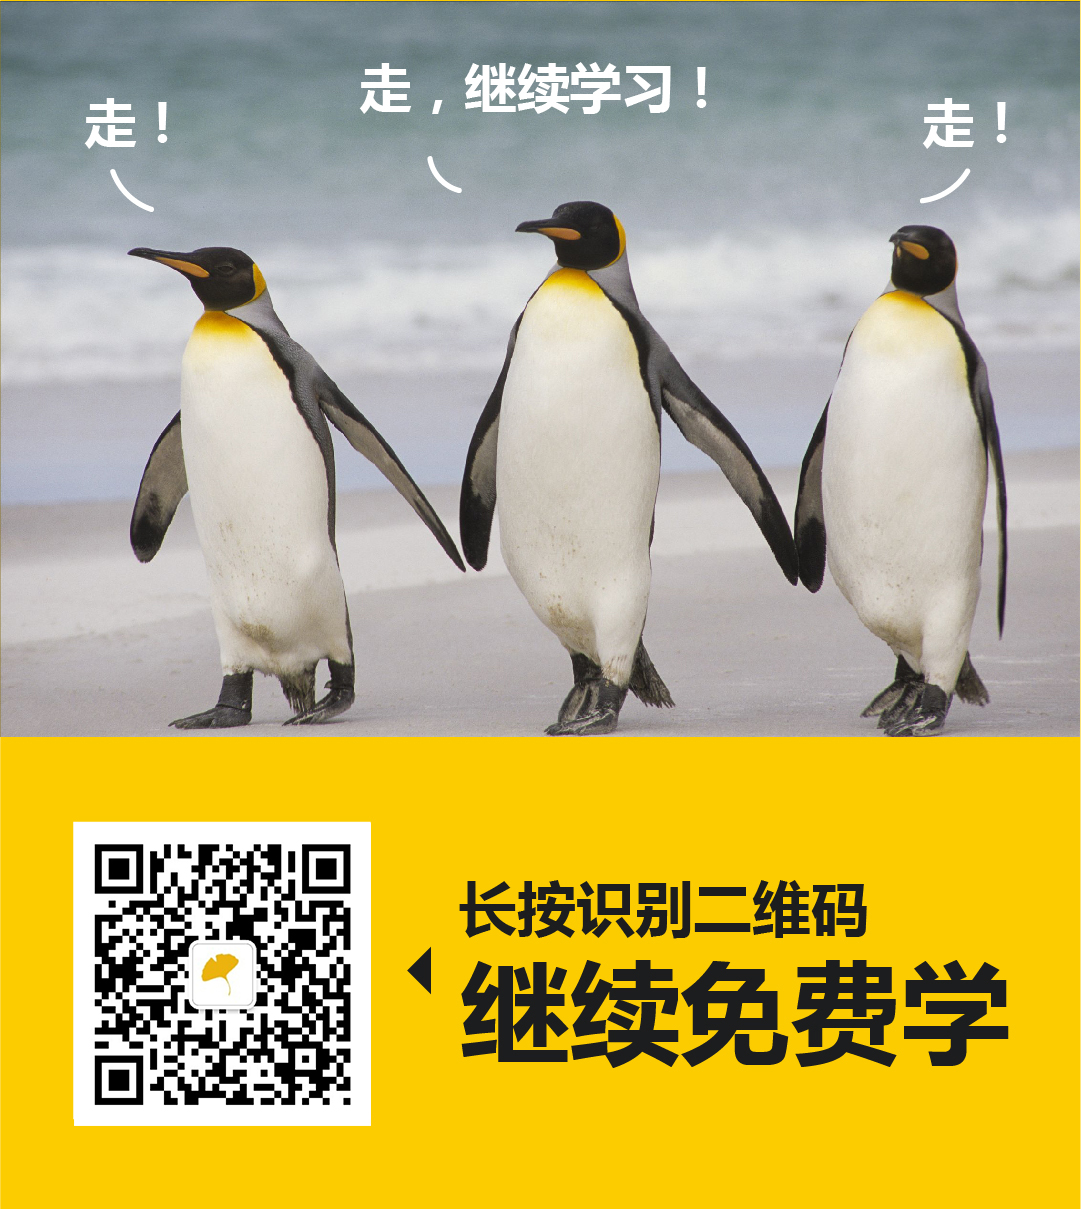 引导课二维码企鹅图.jpg